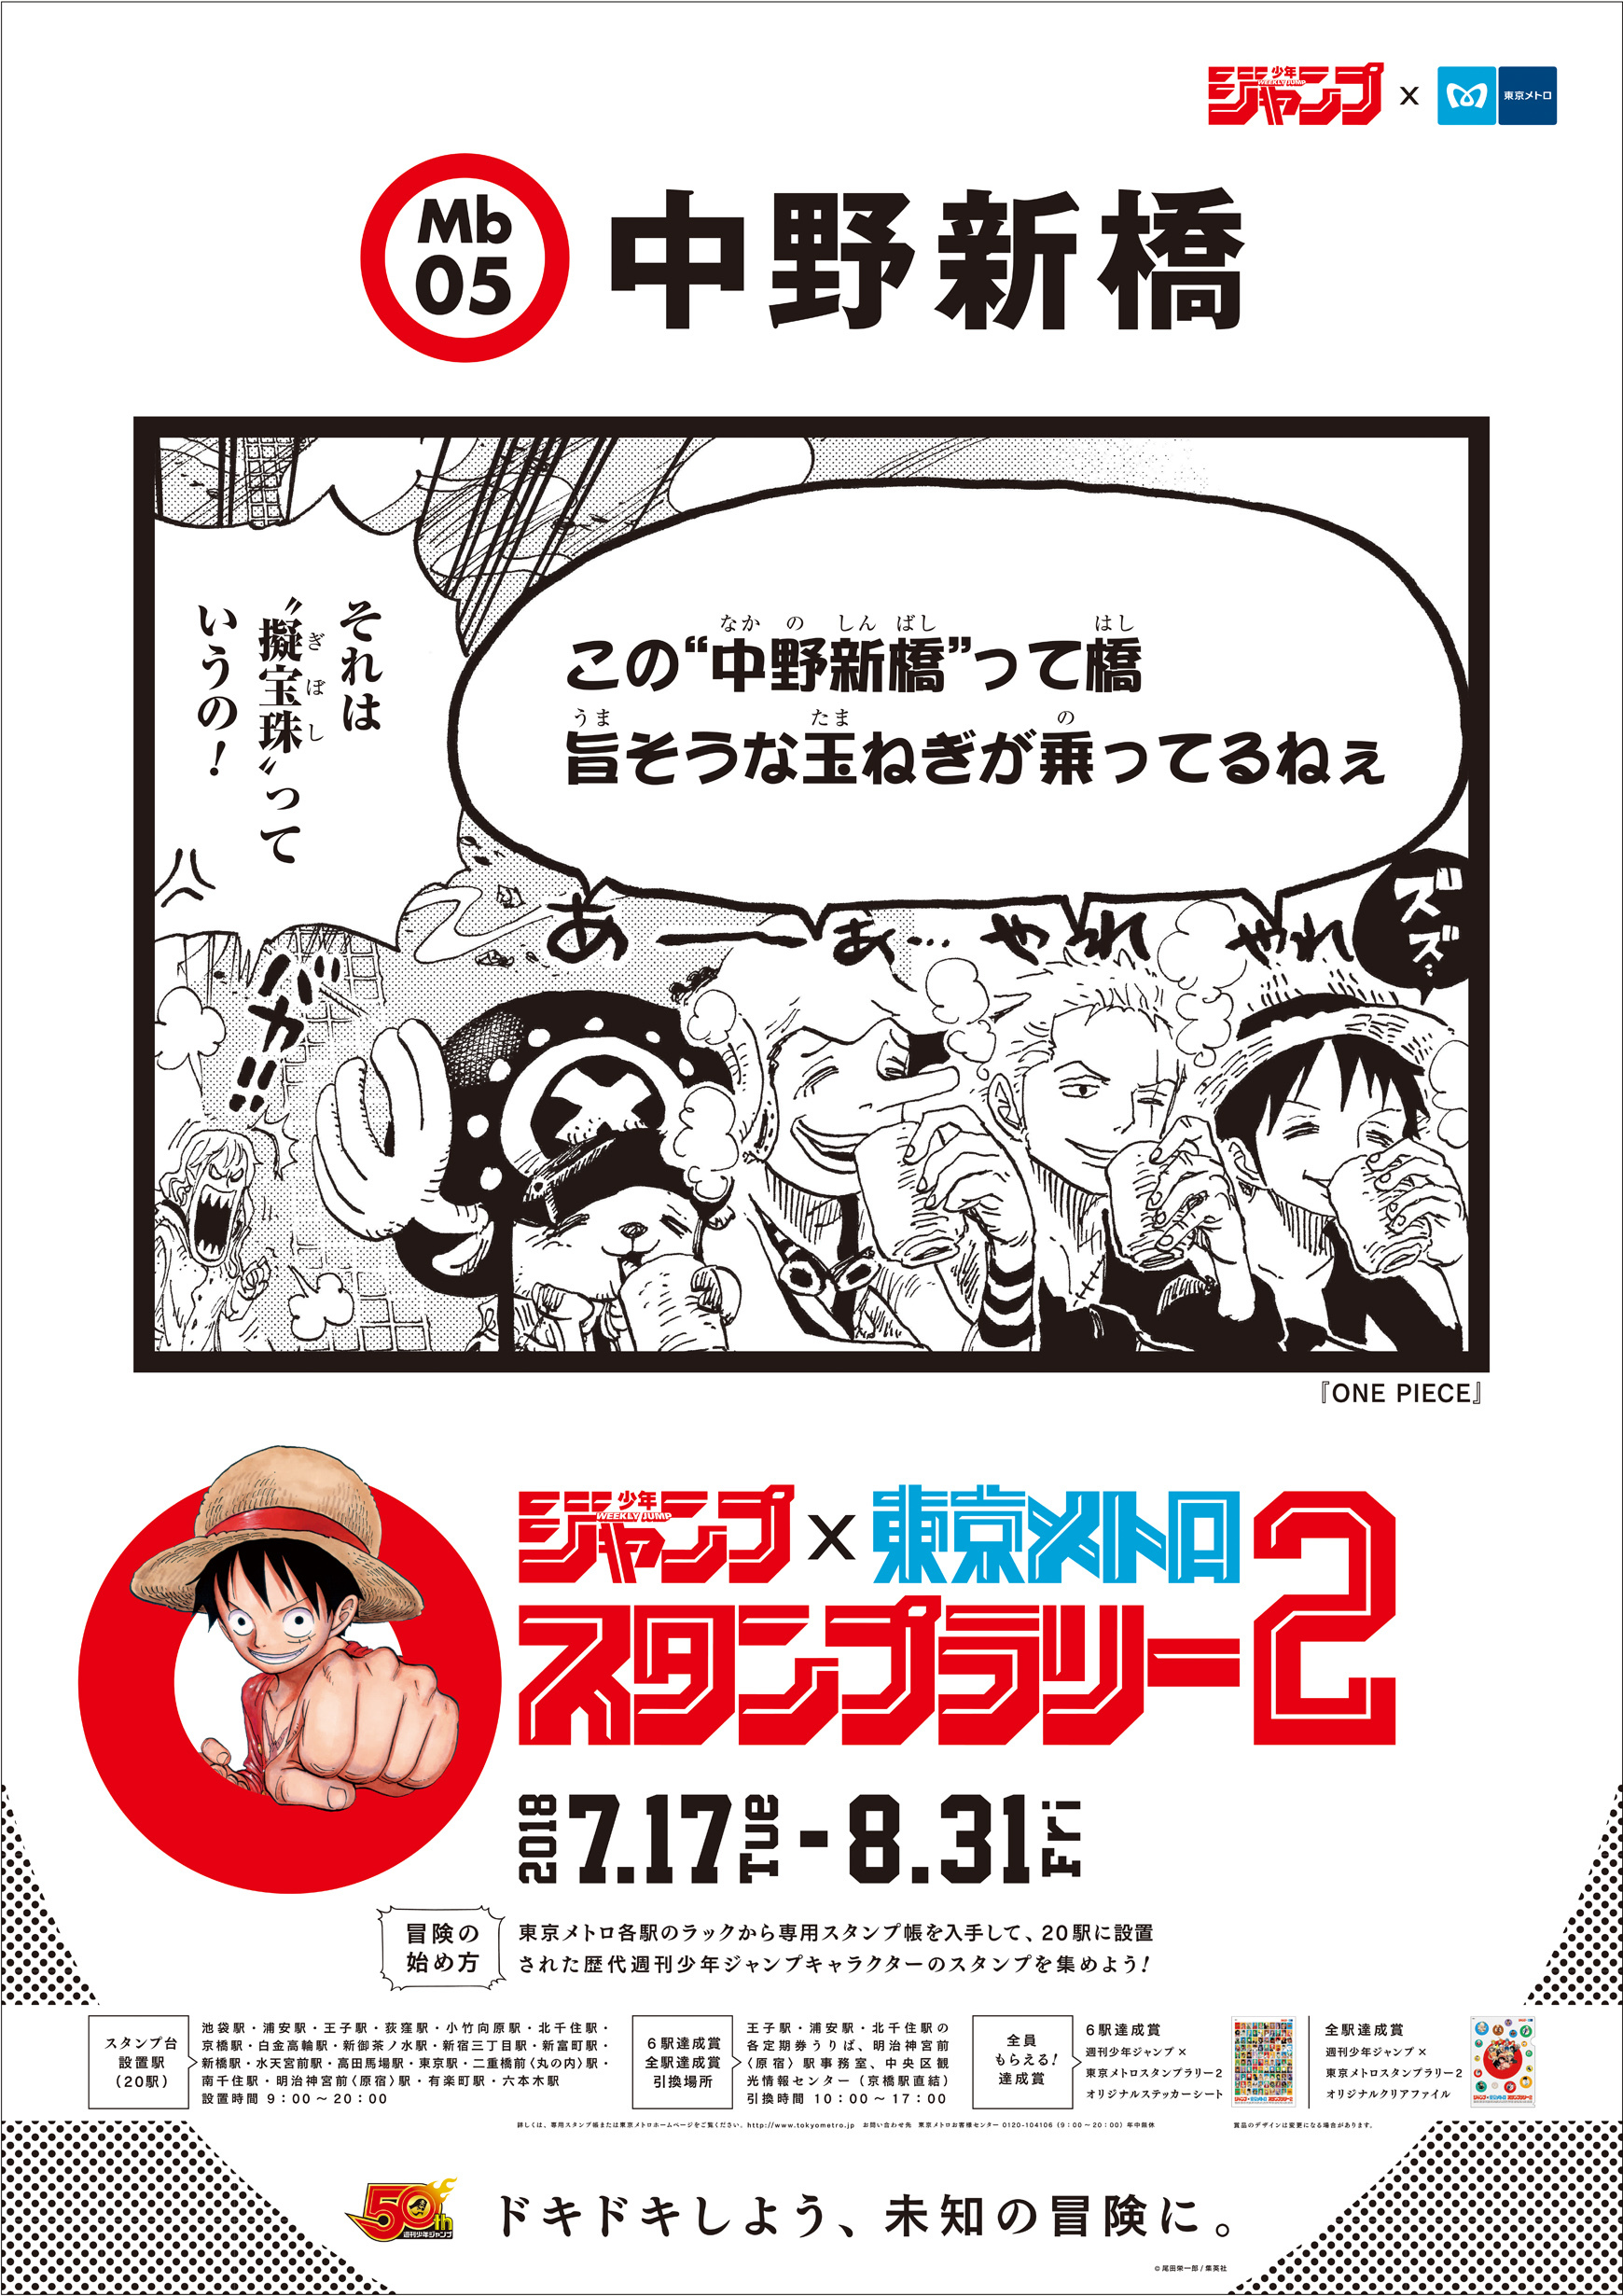 今年の夏も『週刊少年ジャンプ×東京メトロスタンプラリー2』開催決定 